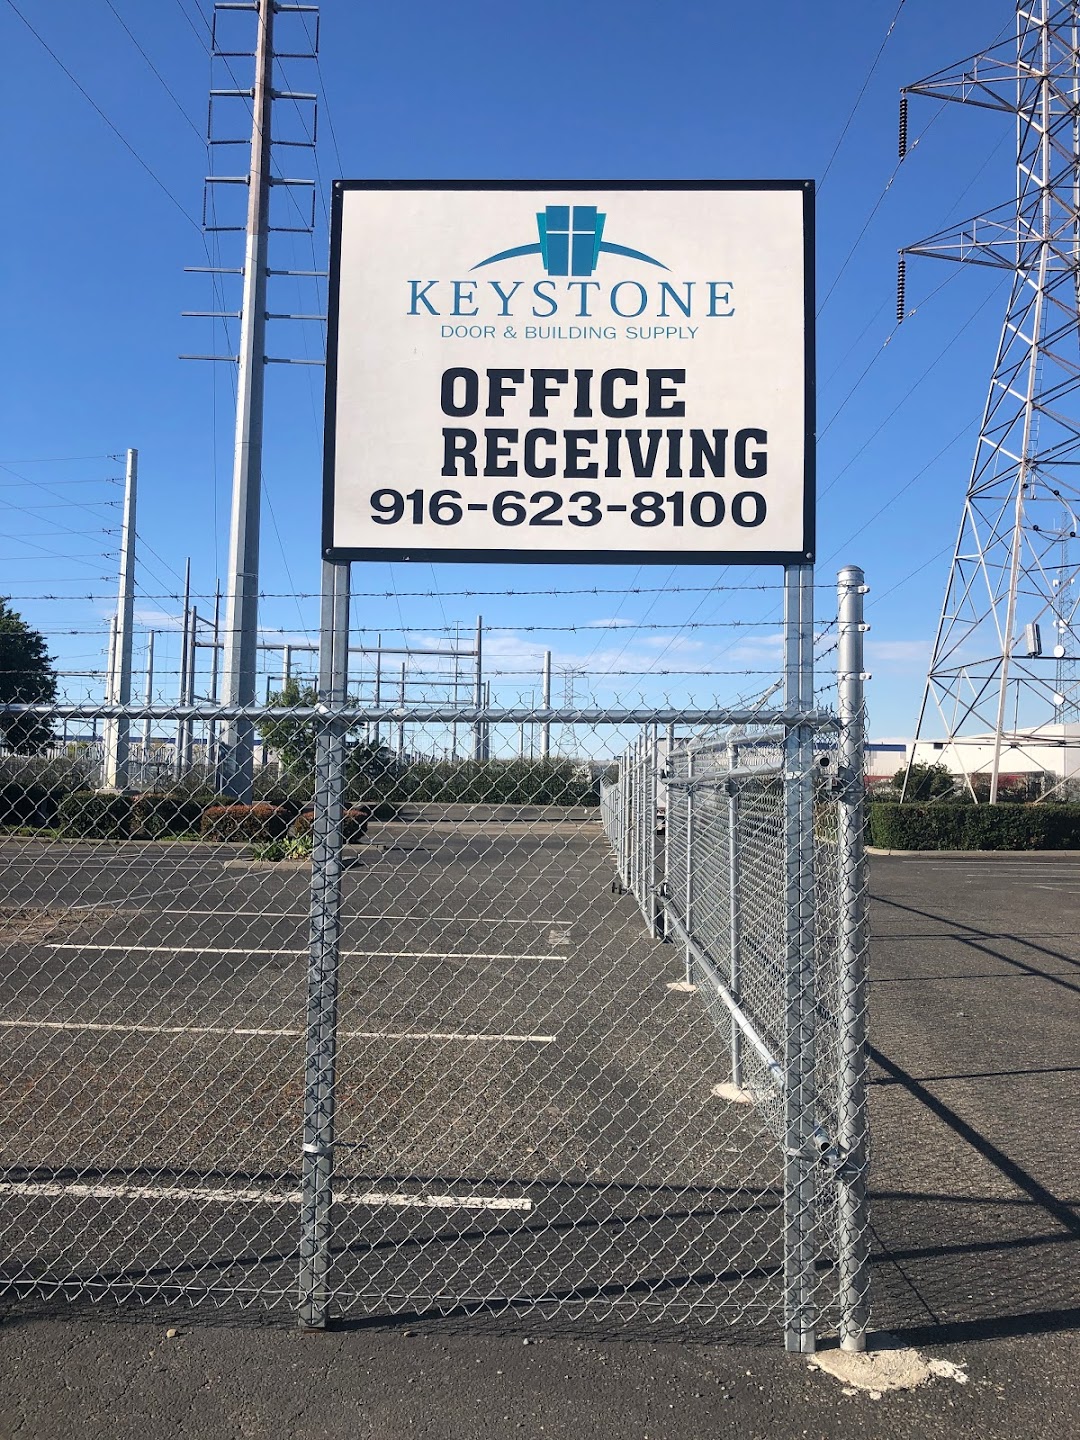 Keystone Door & Building Supply